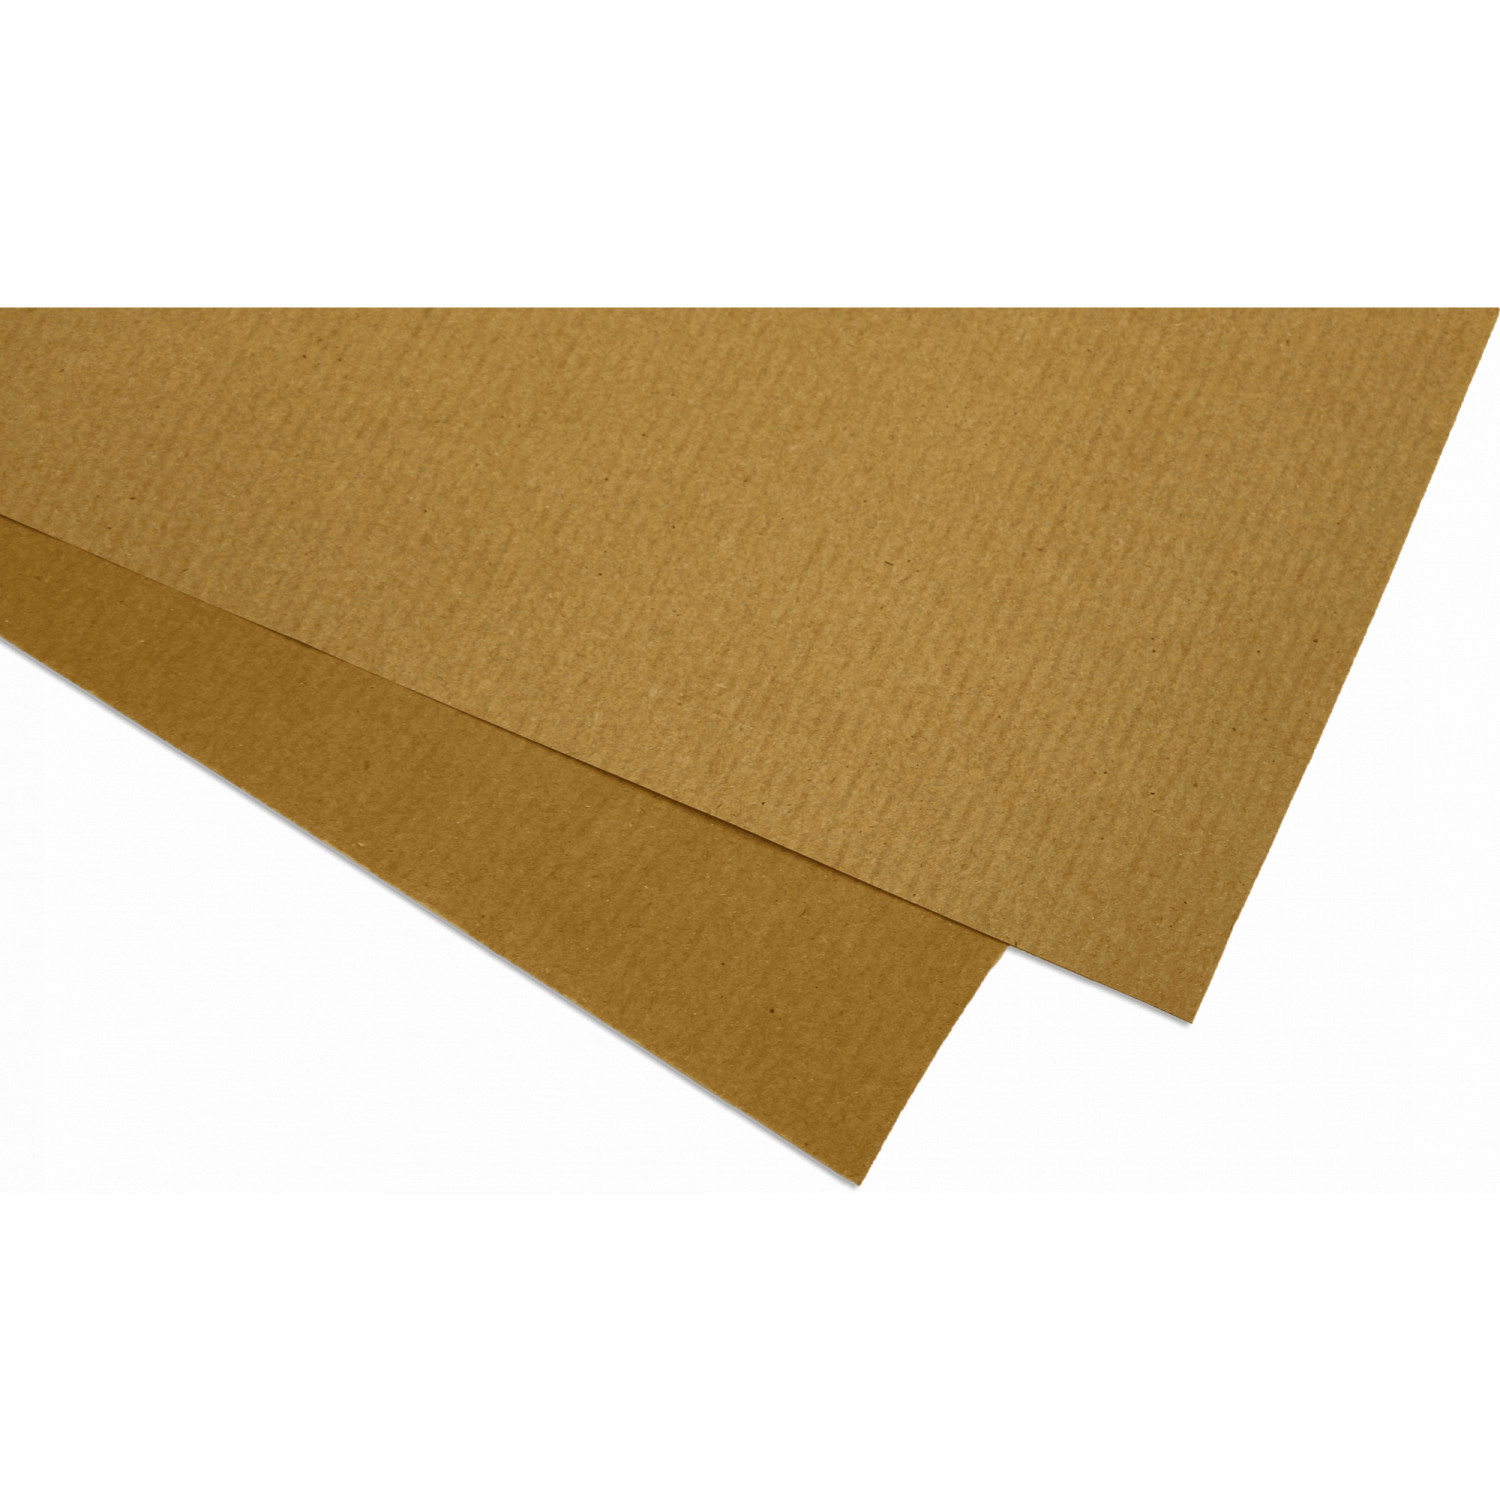 IT Papier-Trennlage braun 50 x 1,25 m (62,5 m²/Rolle)